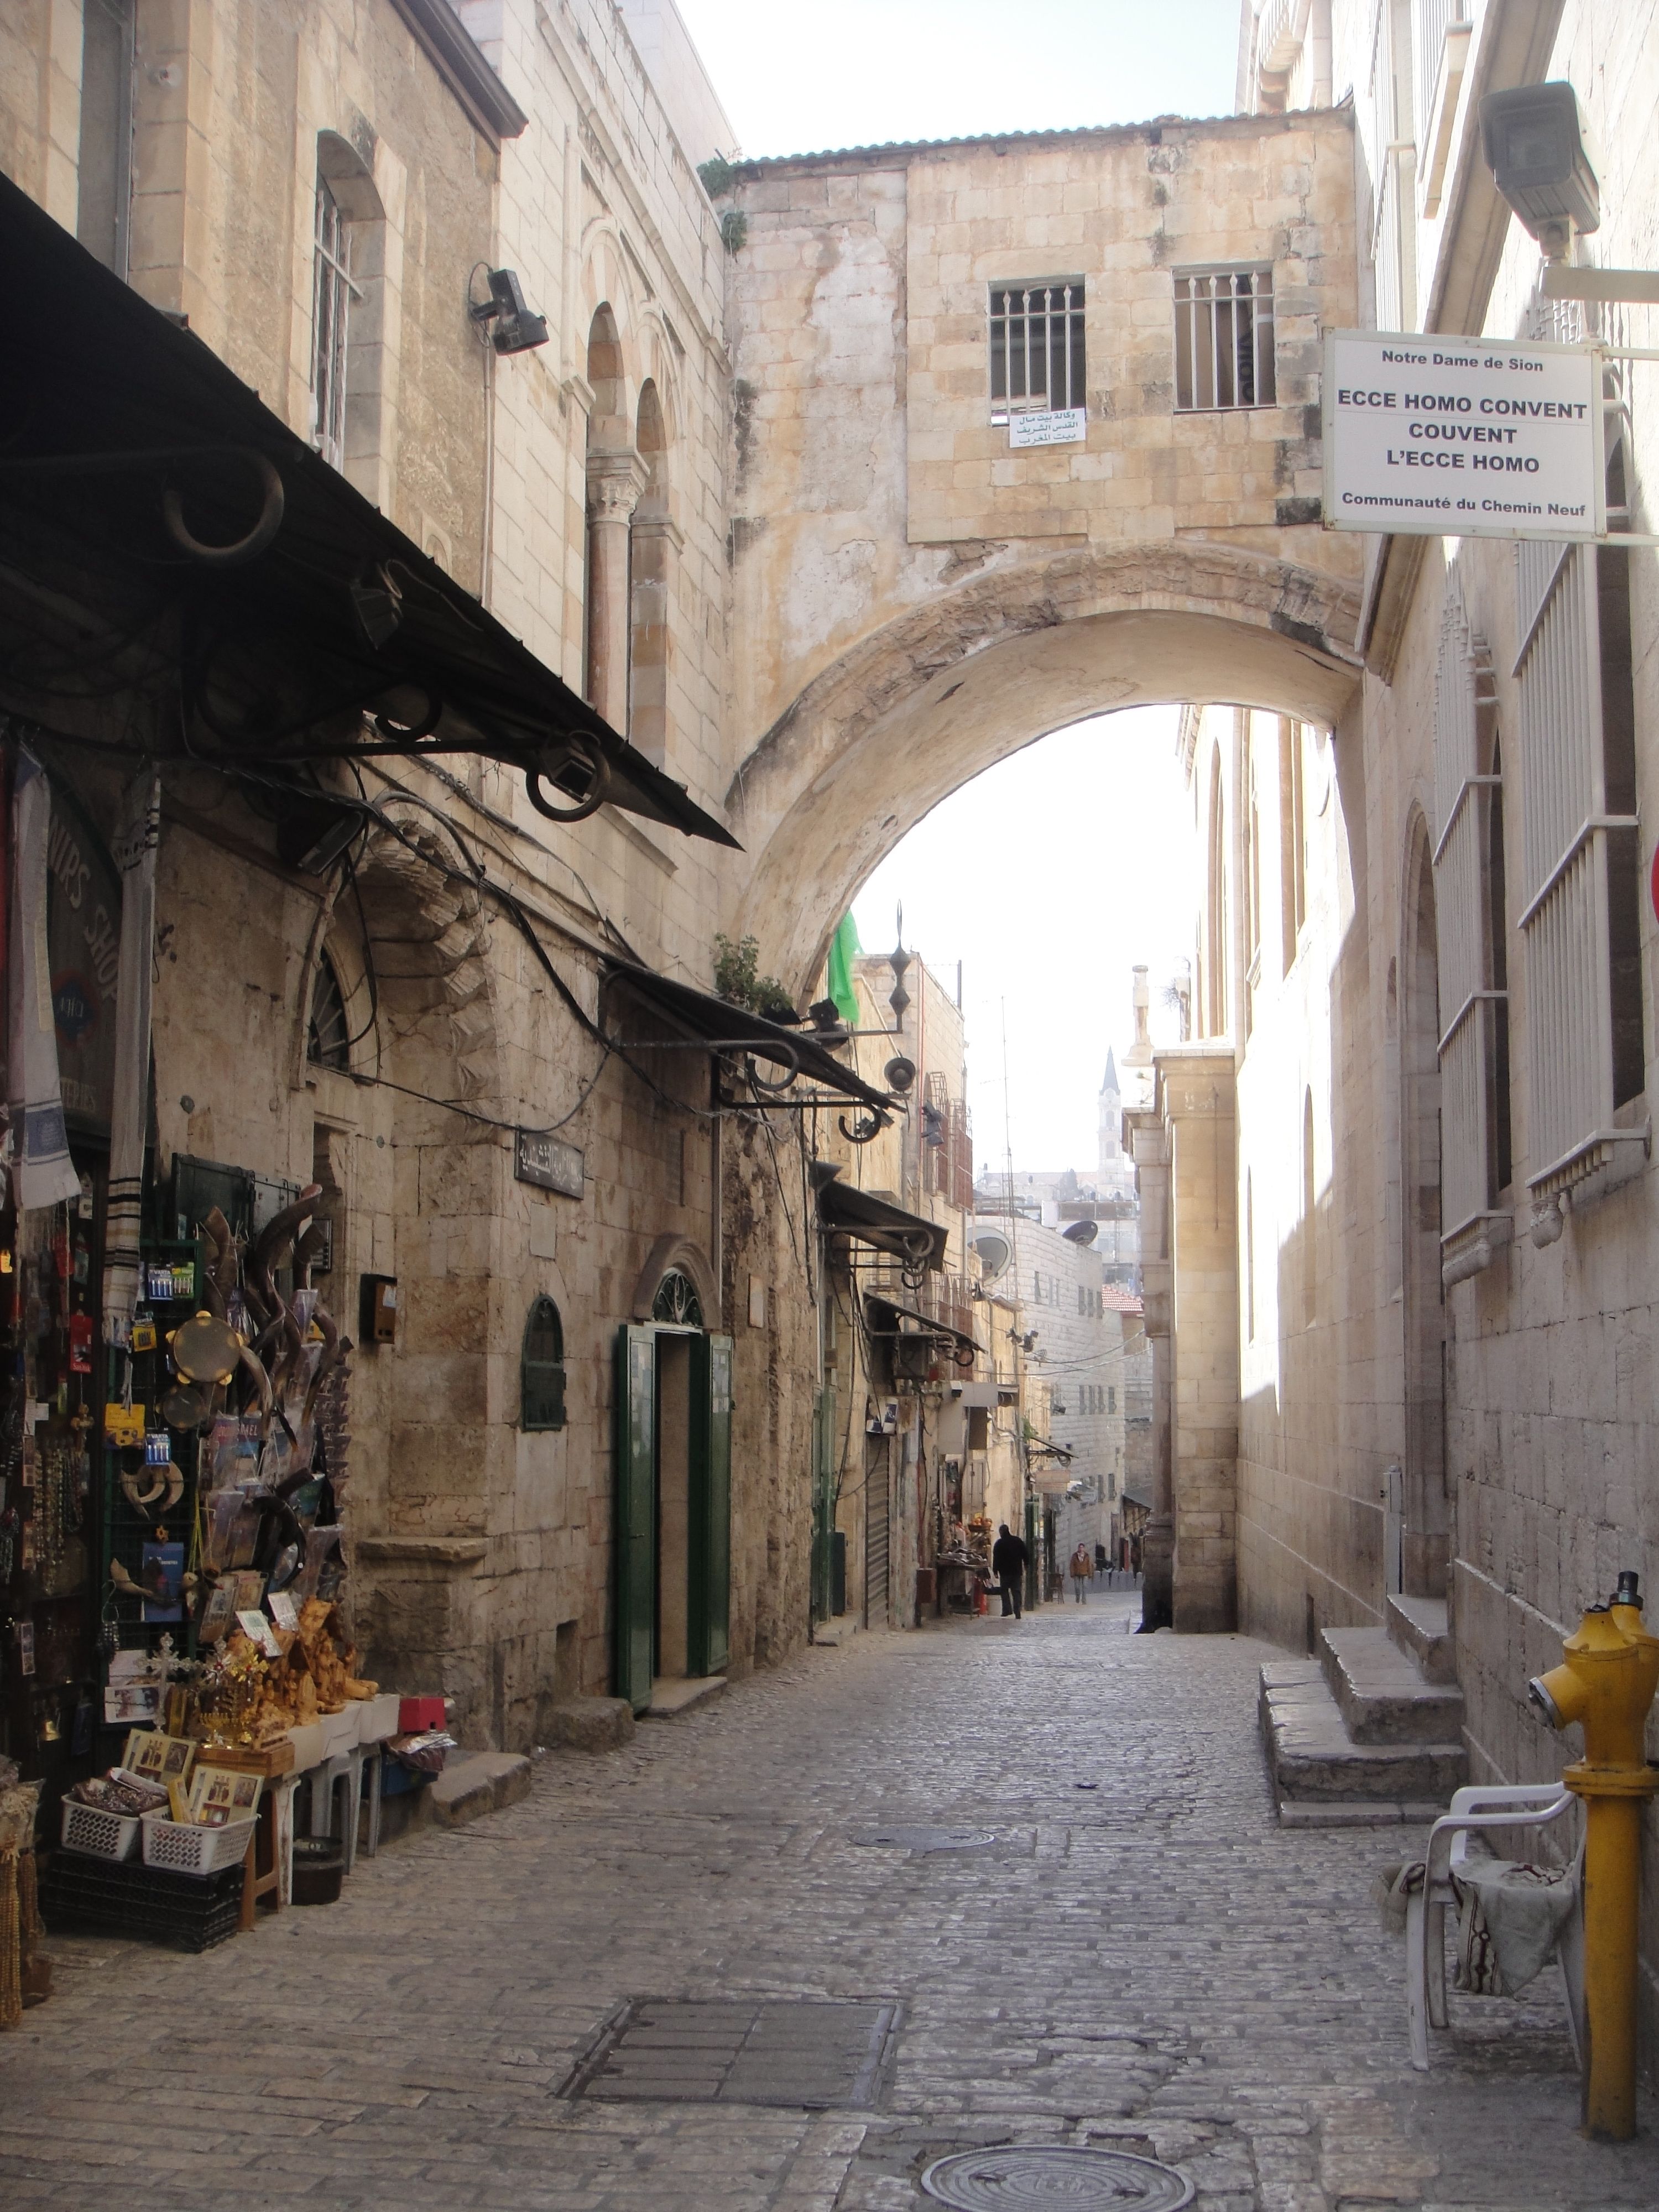 old city - Google Search | Old city | Pinterest | Jerusalem and City